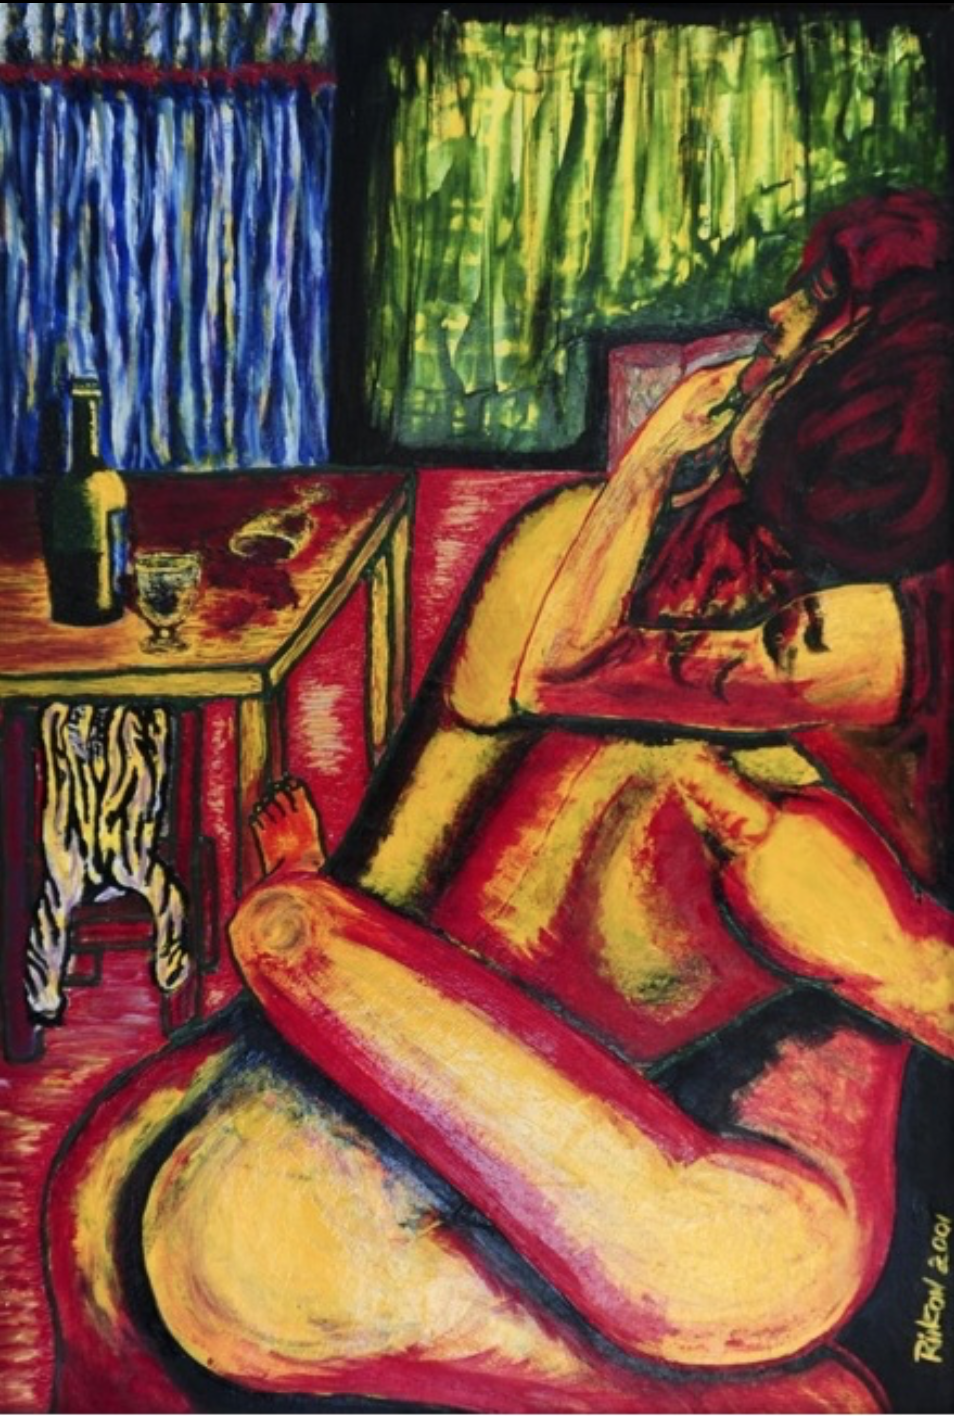 A imagem mostra um quadro elaborado em óleo sobre cartolina de 75x57 centímetros, chamado Mentiras Vespertinas, no qual um homem e uma mulher nus estão se amando em um quarto de um motel barato. À esquerda deles há uma mesa com um uma garrafa de vinho e duas taças, uma delas emborcada, com o vinho derramado.